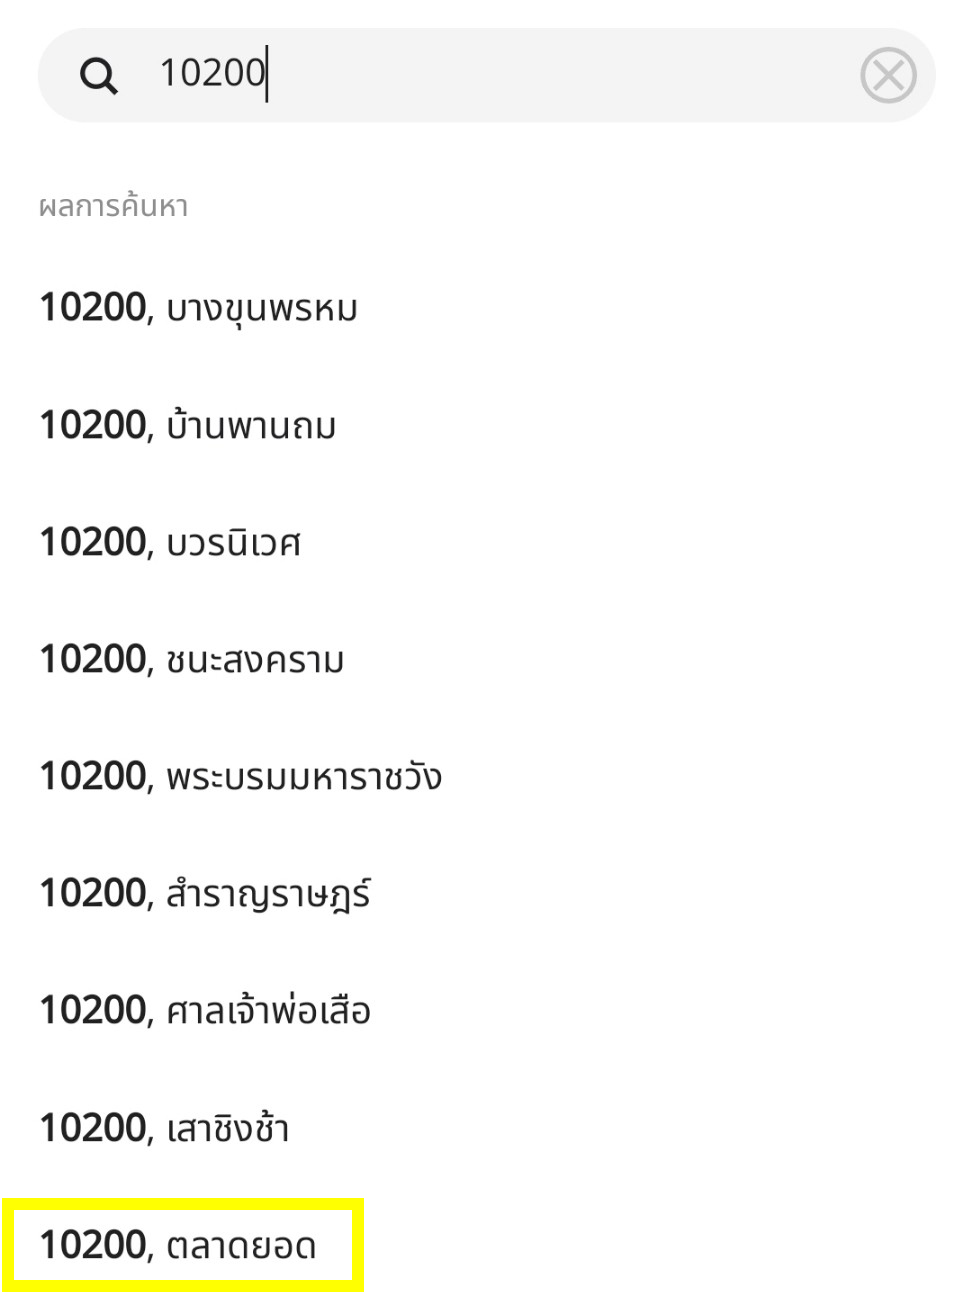 마크로 태국 Makro Thailand 우편번호 및 구역 입력